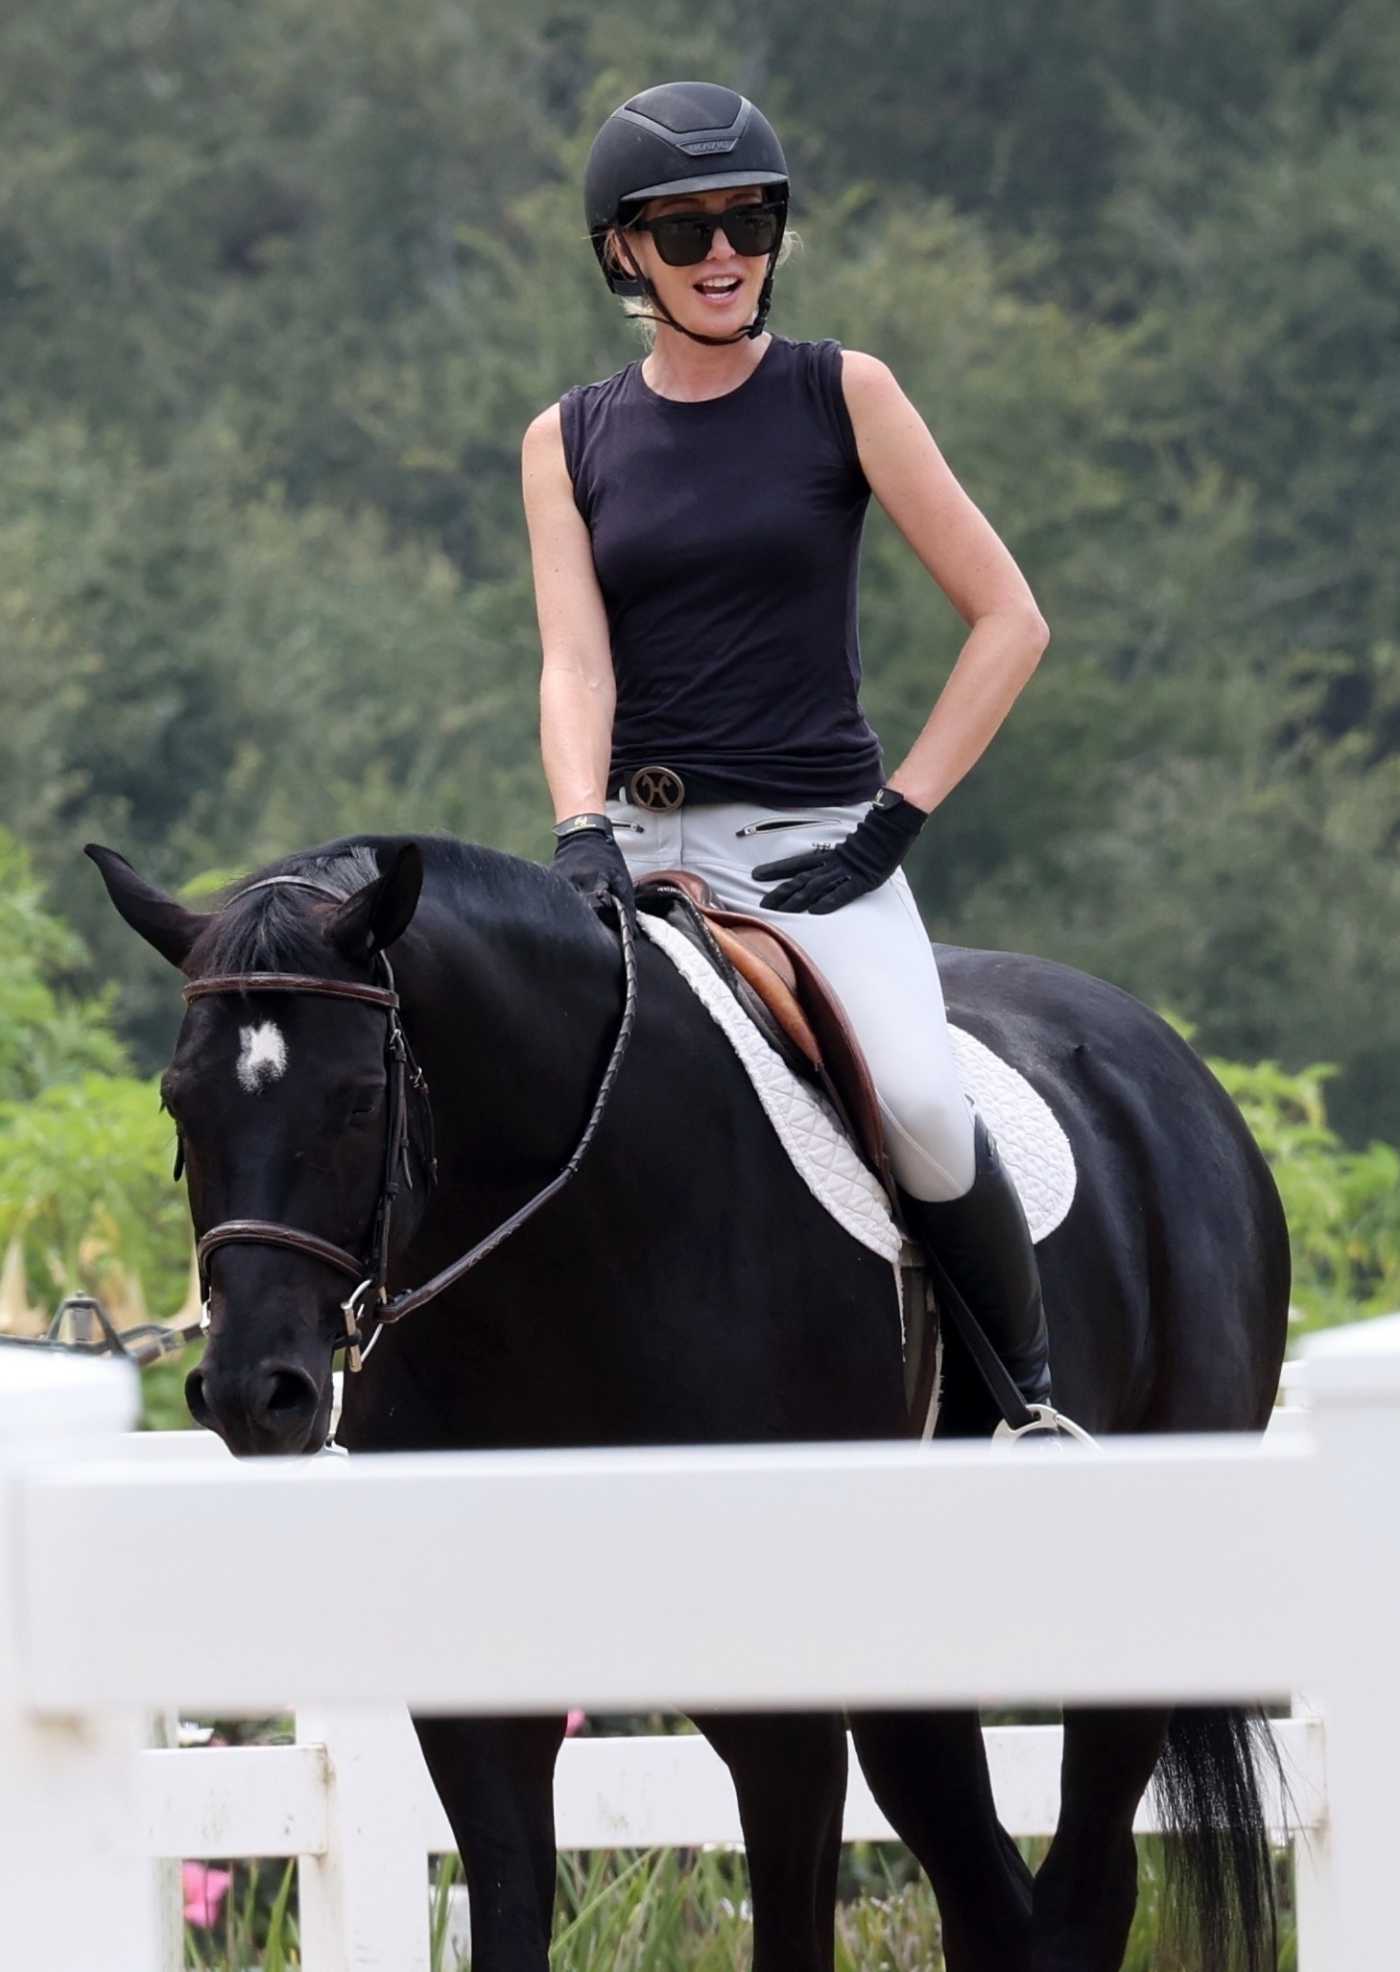 Portia de Rossi in a Black Top Takes Horse Riding Lessons in Santa Barbara 08/23/2020